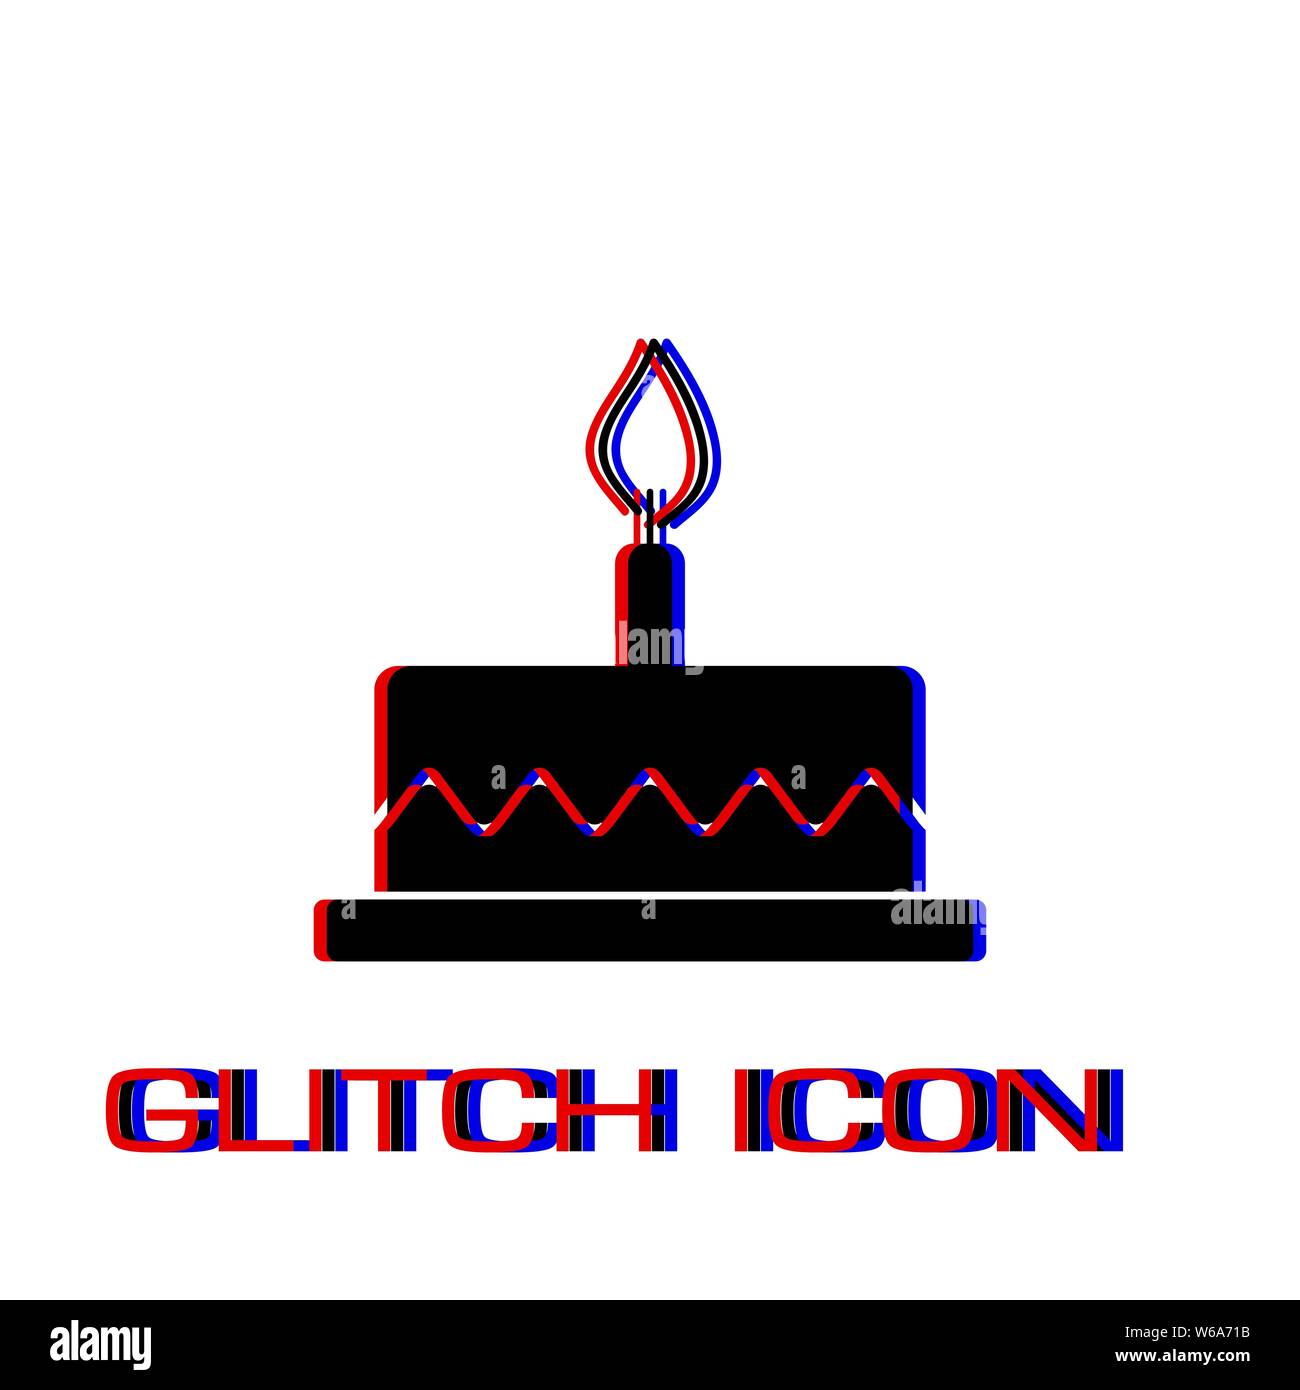 Geburtstag Kuchen Symbol flach. Einfache Piktogramm-Glitch Wirkung. Vector illustration symbol Stock Vektor